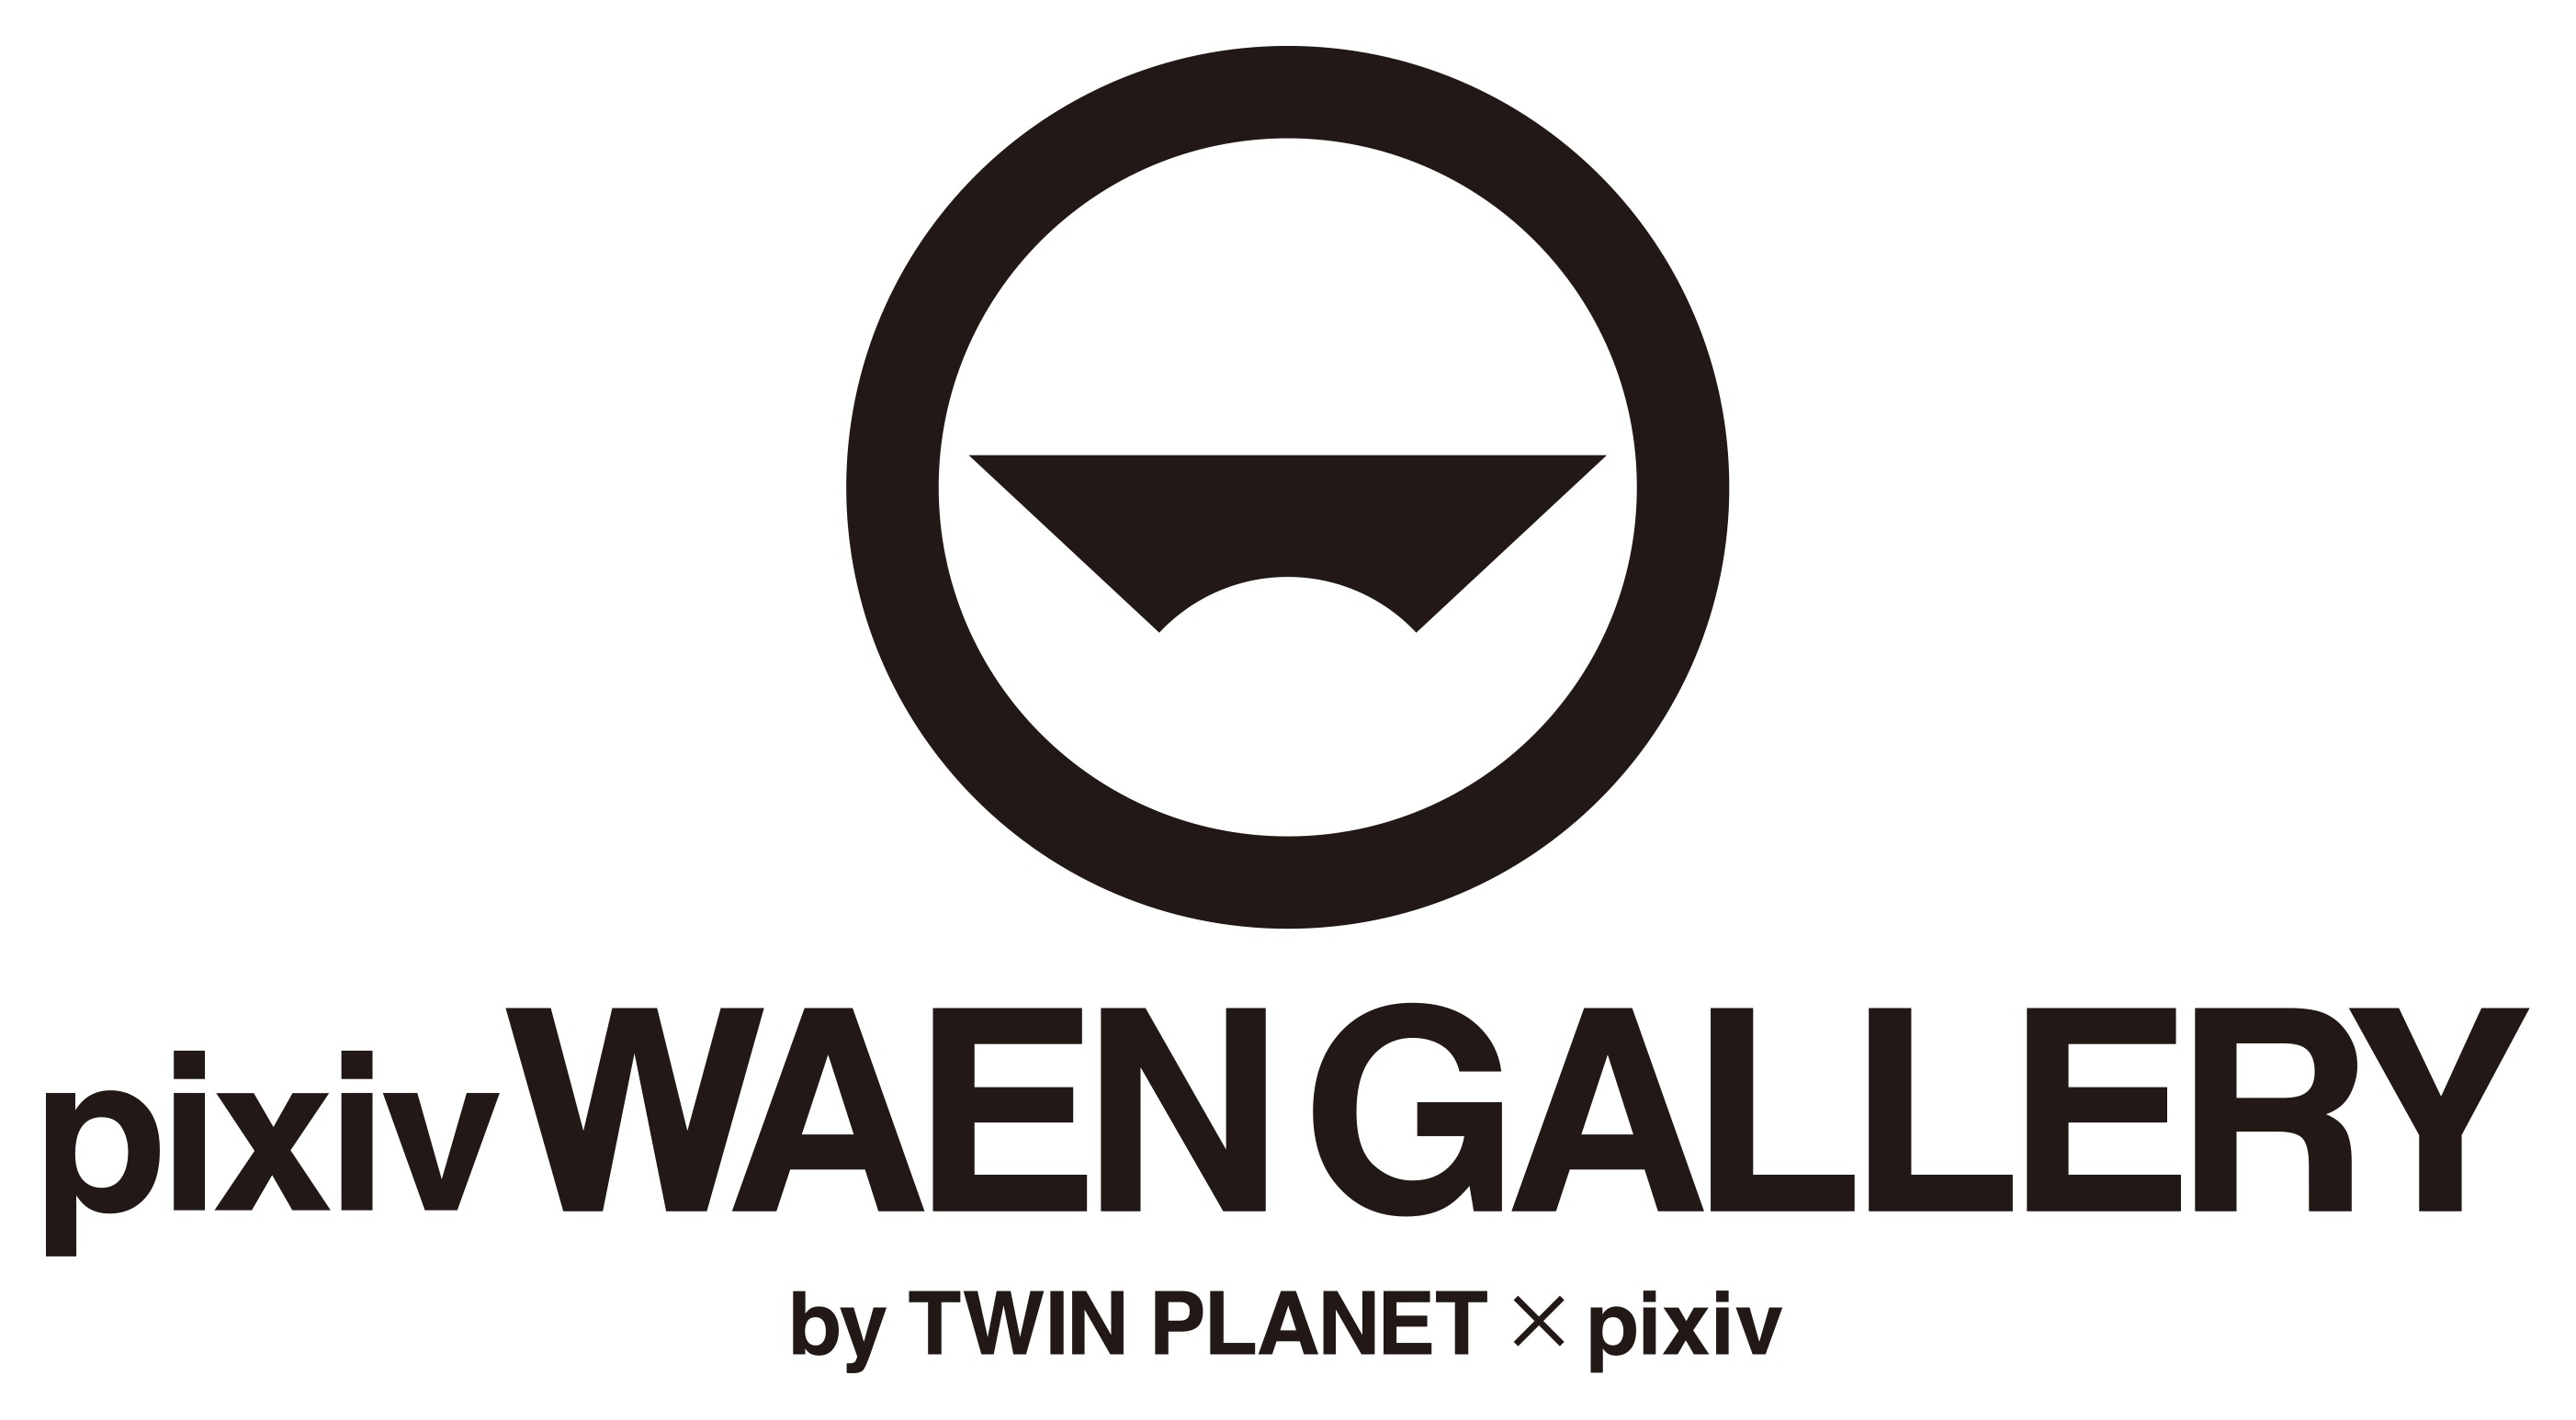 ピクシブとツインプラネットが共同運営するギャラリー Pixiv Waen Gallery By Twin Planet Pixiv 表参道にオープン Spice エンタメ特化型情報メディア スパイス